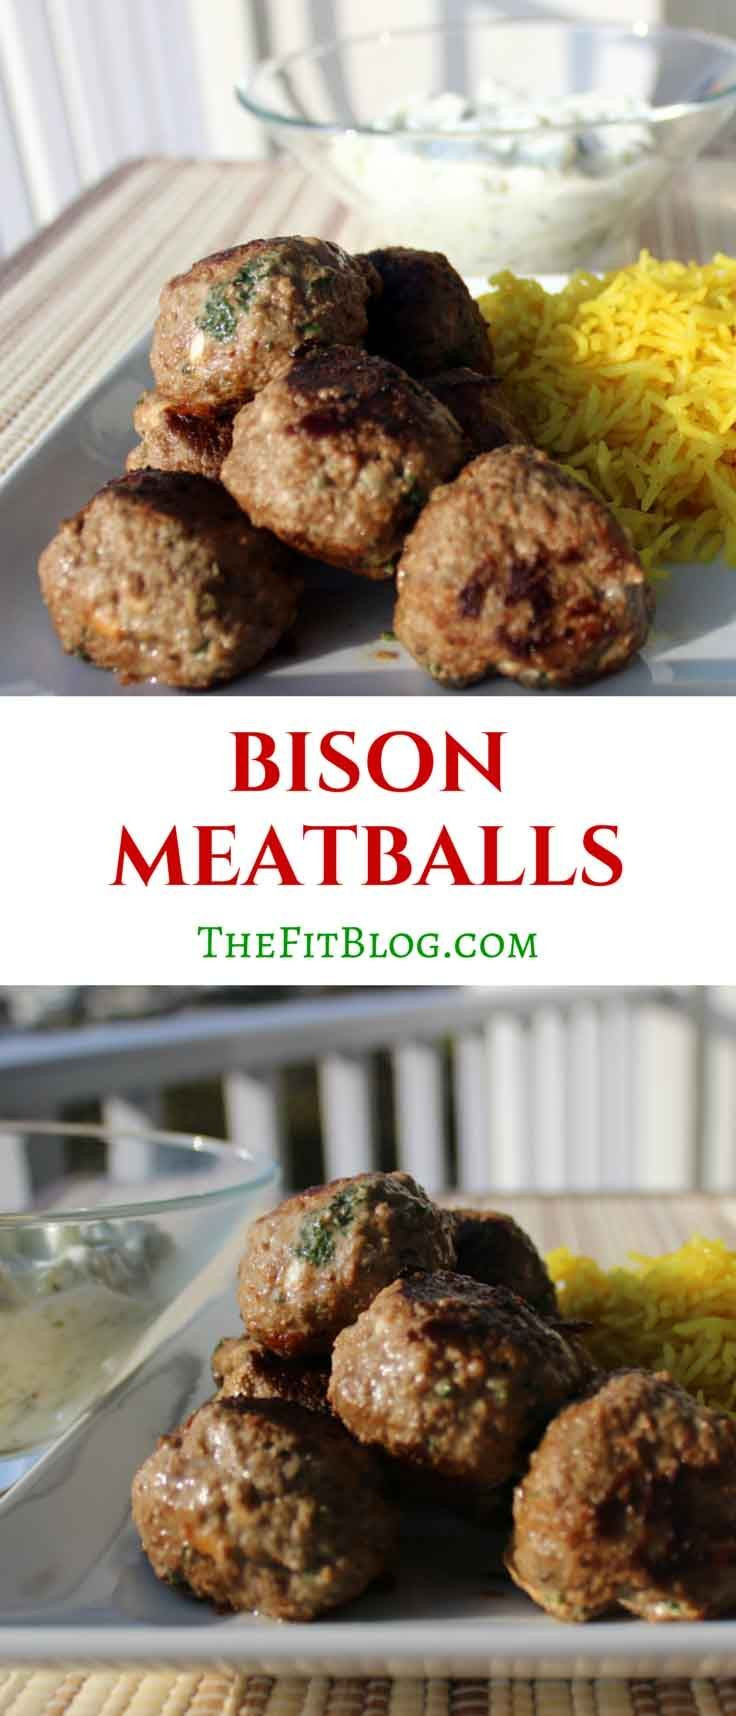 Healthy Ground Bison Recipes
 100 Ground Bison Recipes on Pinterest